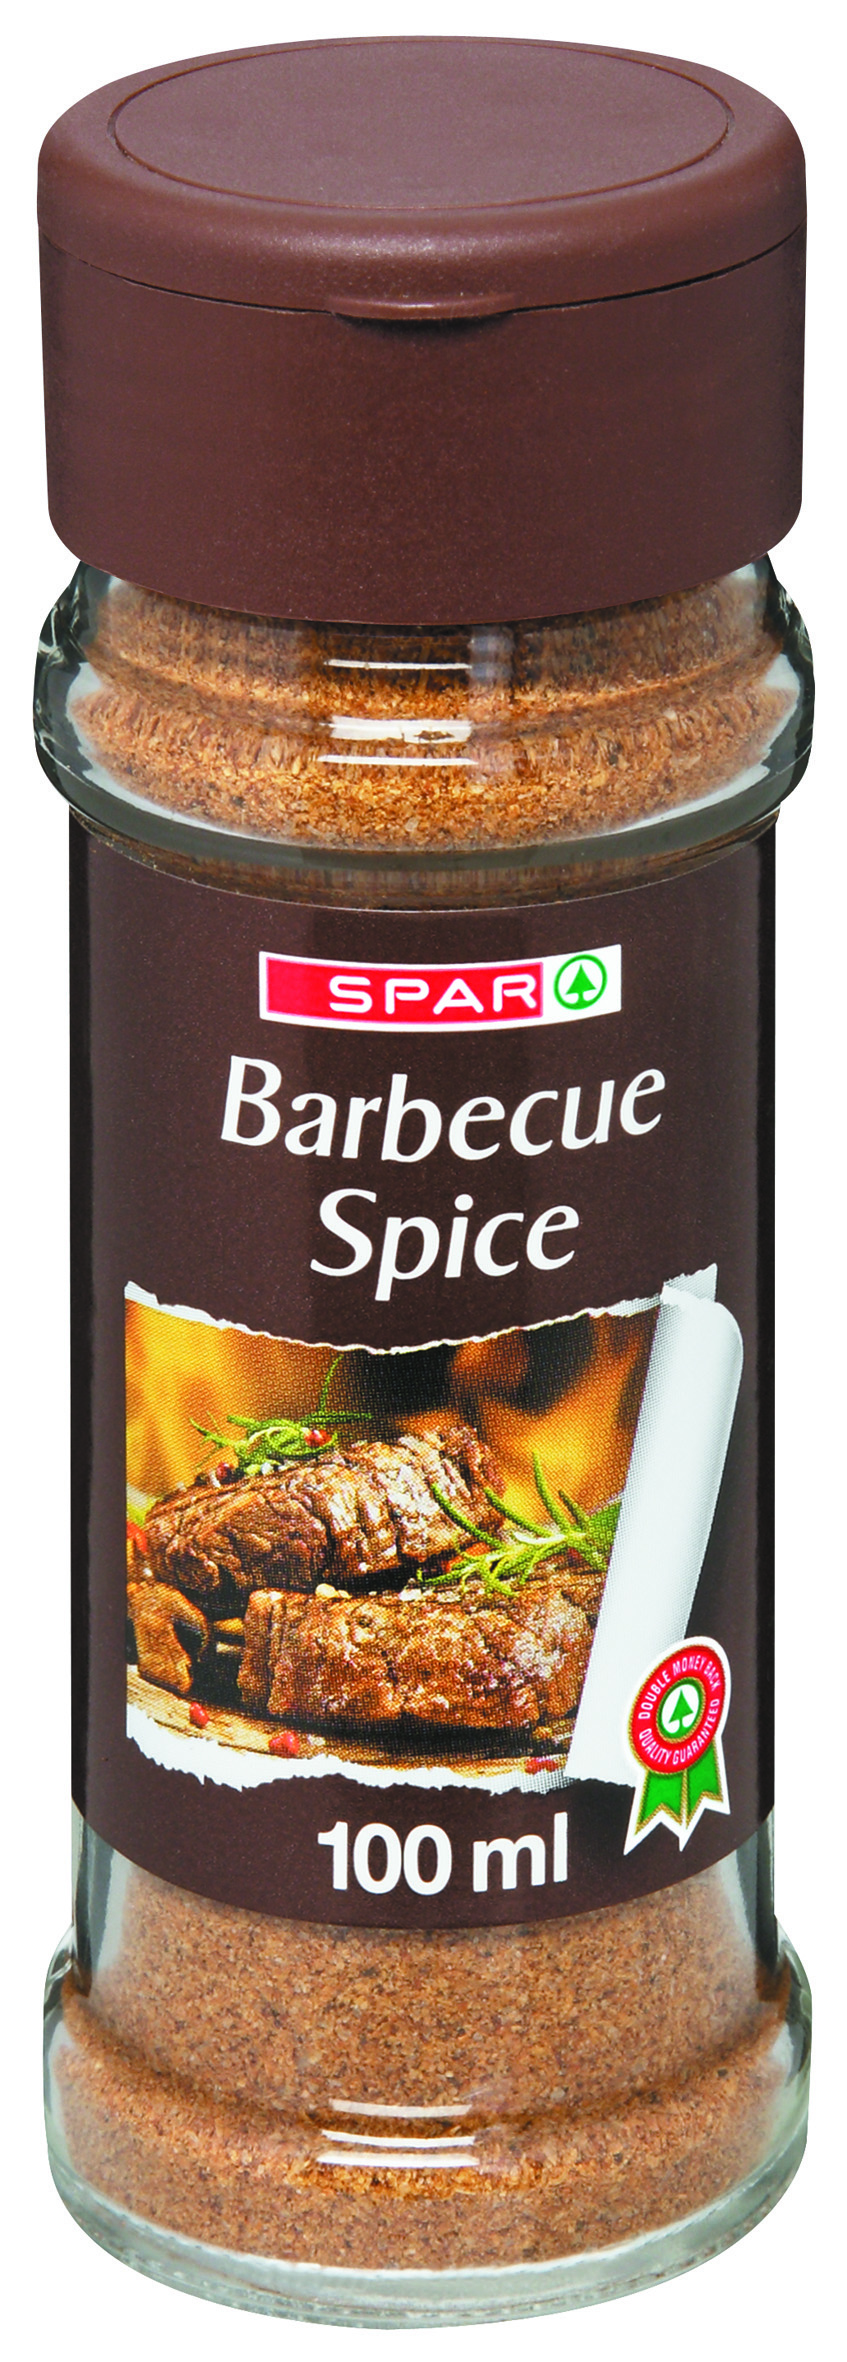 barbecue spice